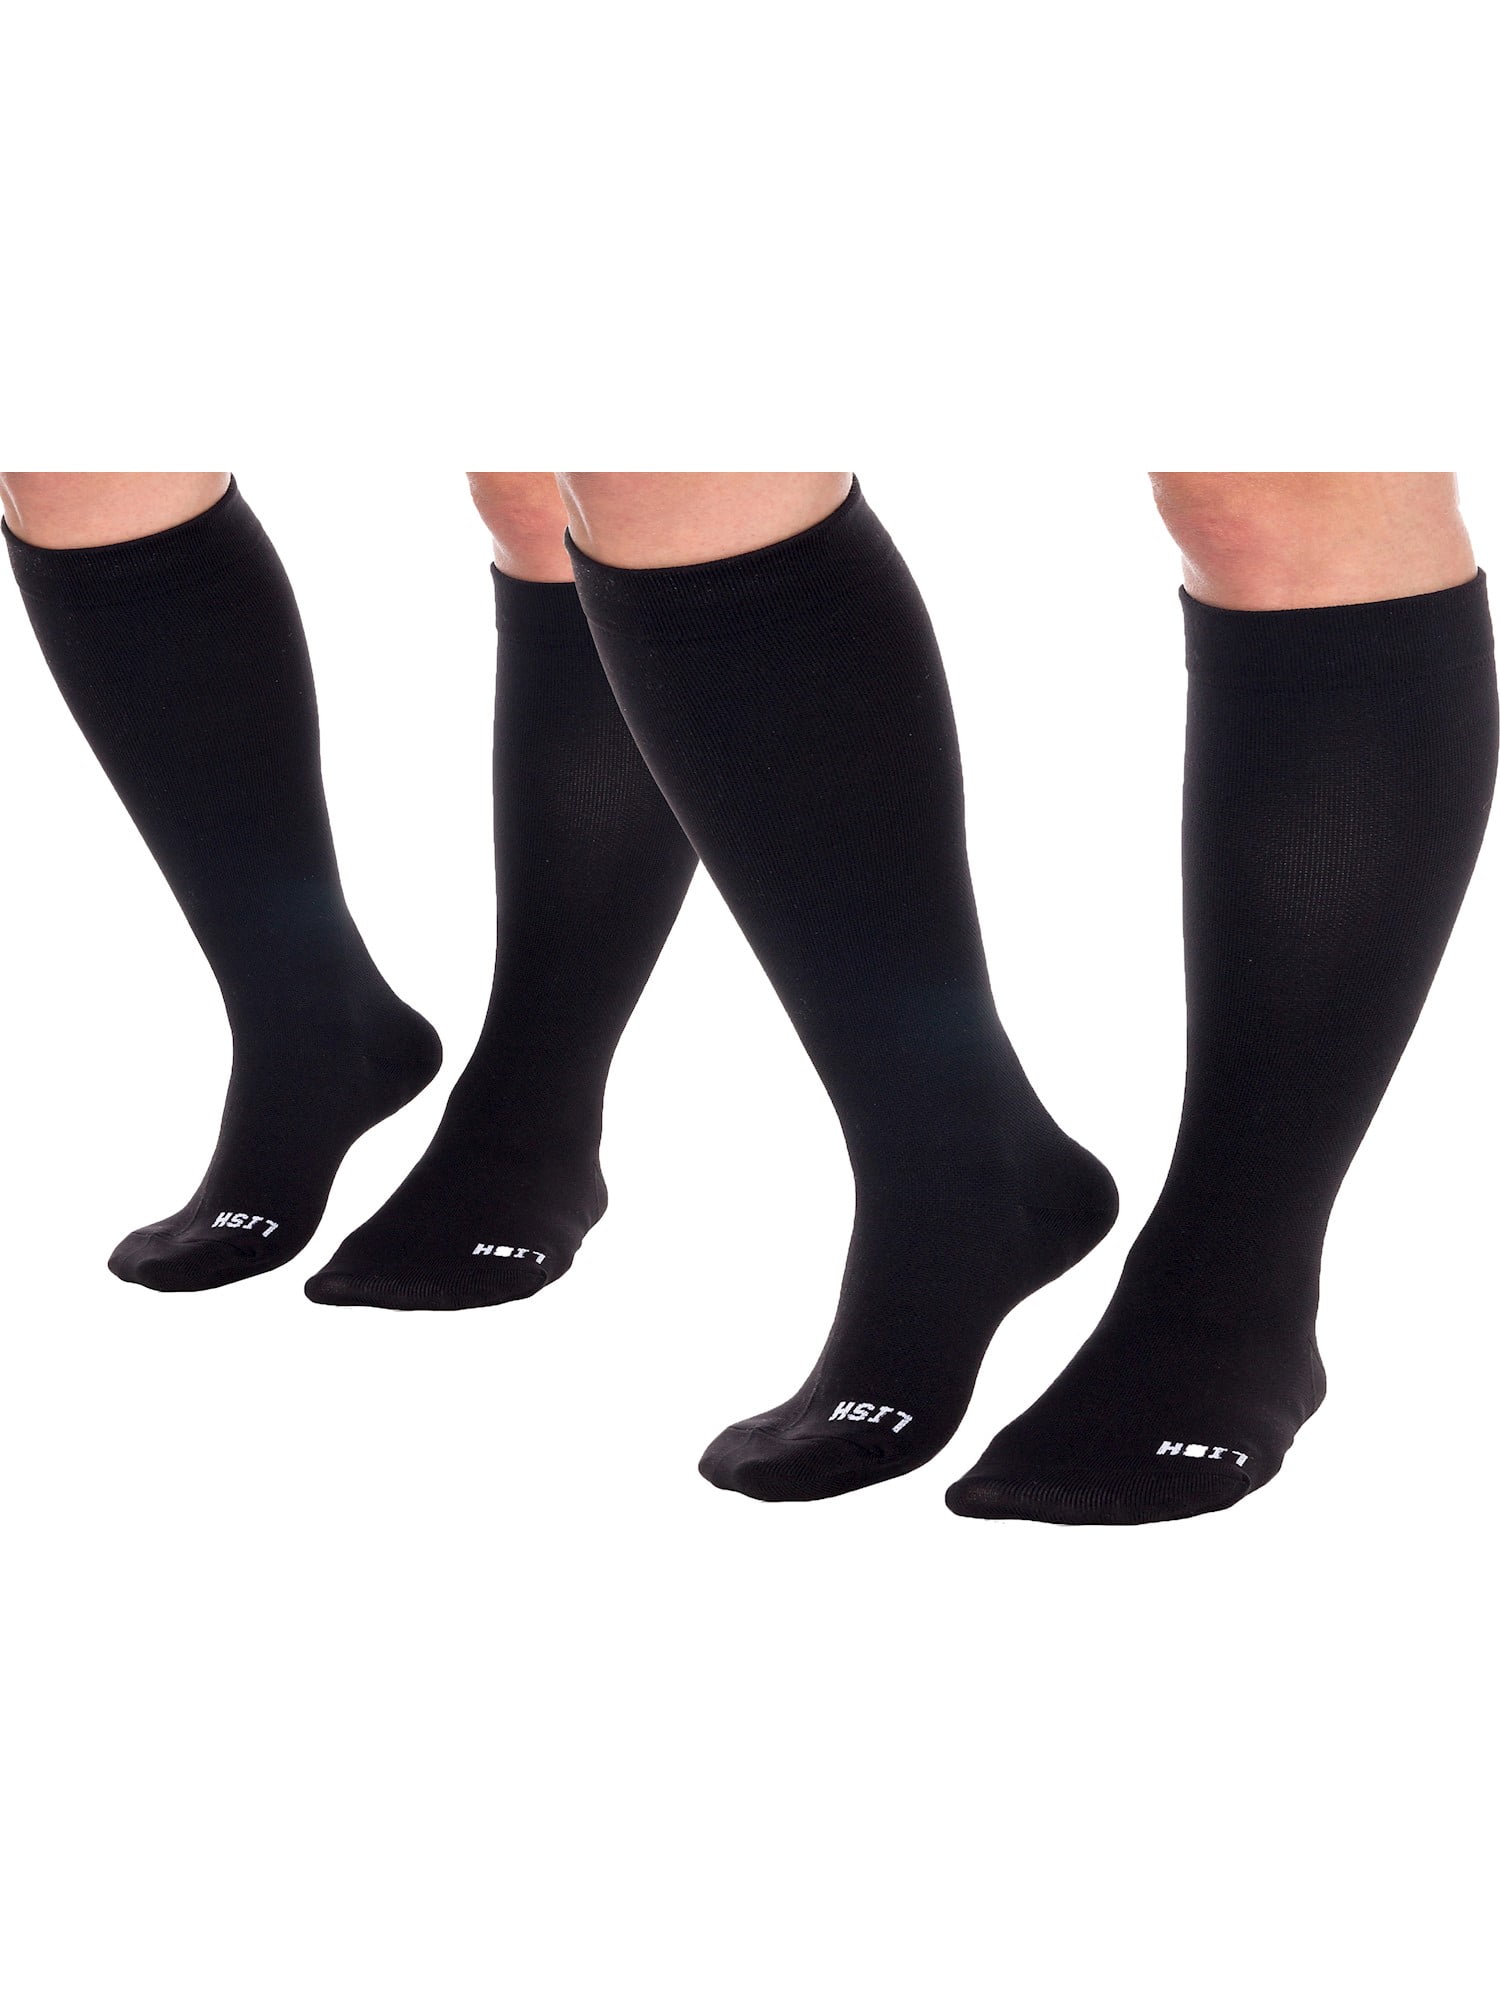 Over The Calf Tube Ankle Socks Knee Length Blink 182 Sock Sport Legs/Boots Knee High Mid-Calf